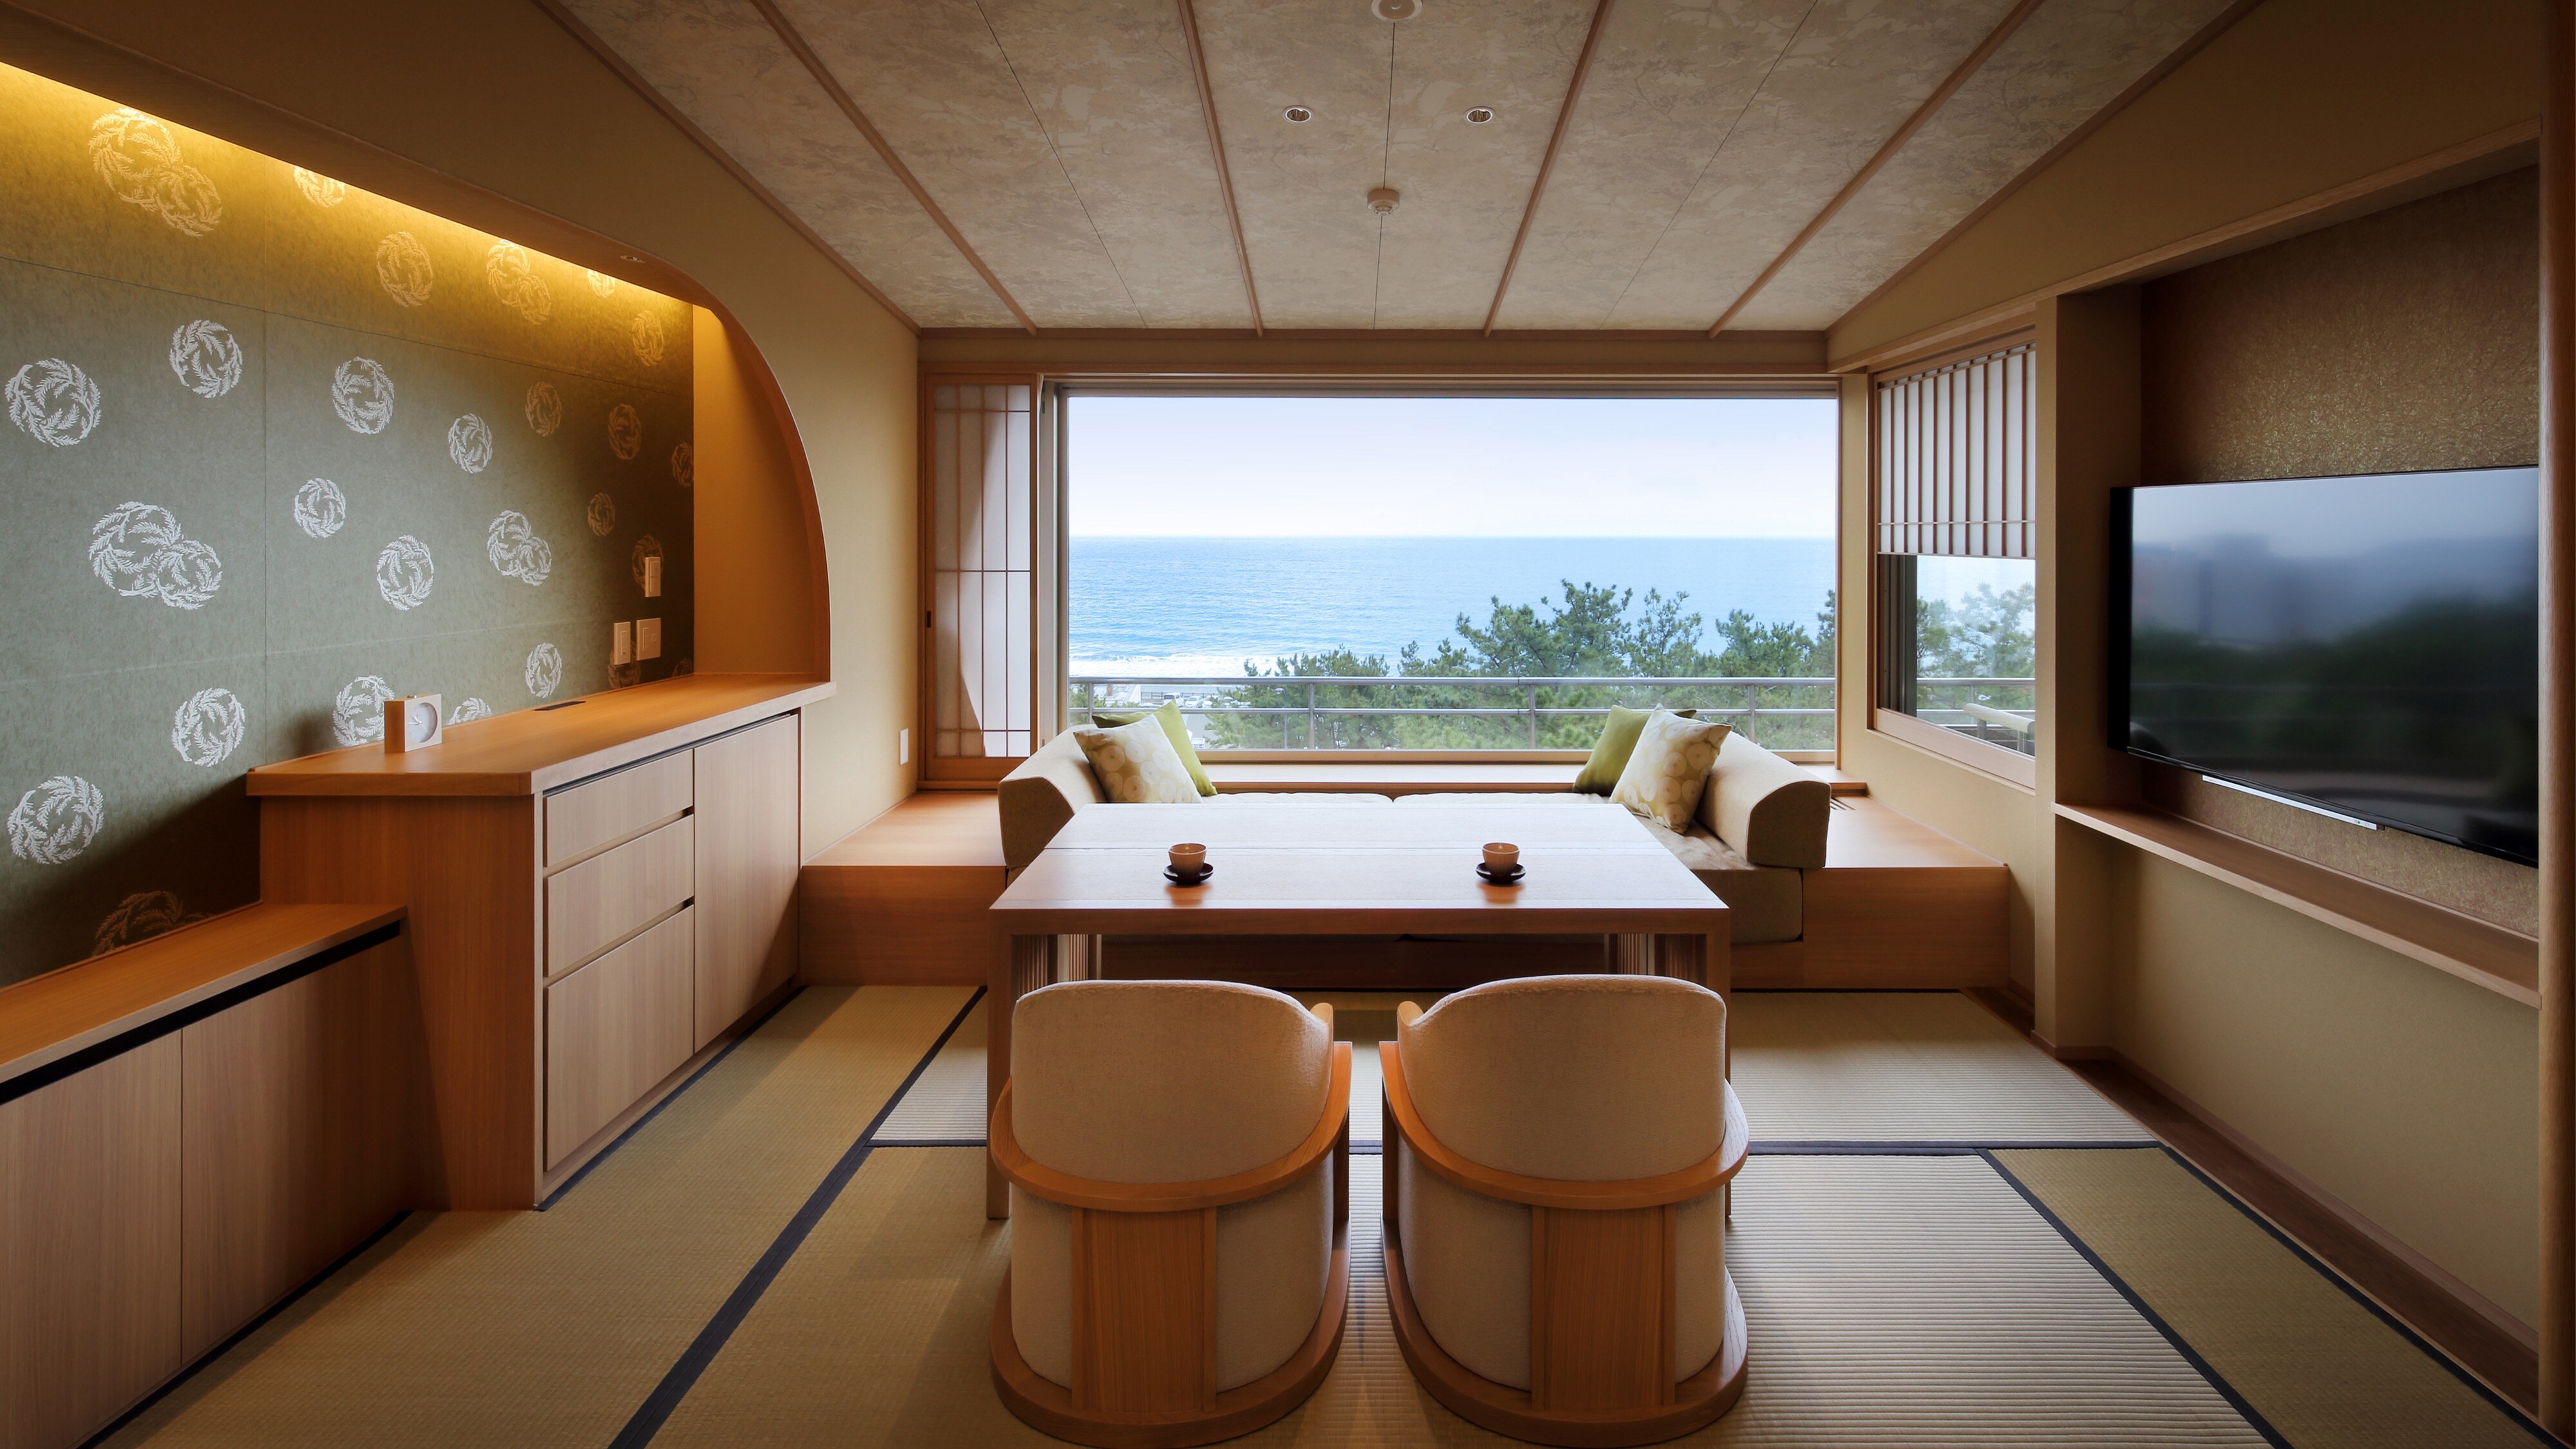 新：日西式温泉半露天房间（餐厅+ TW 床）[6F]（窗边餐厅类型图像）